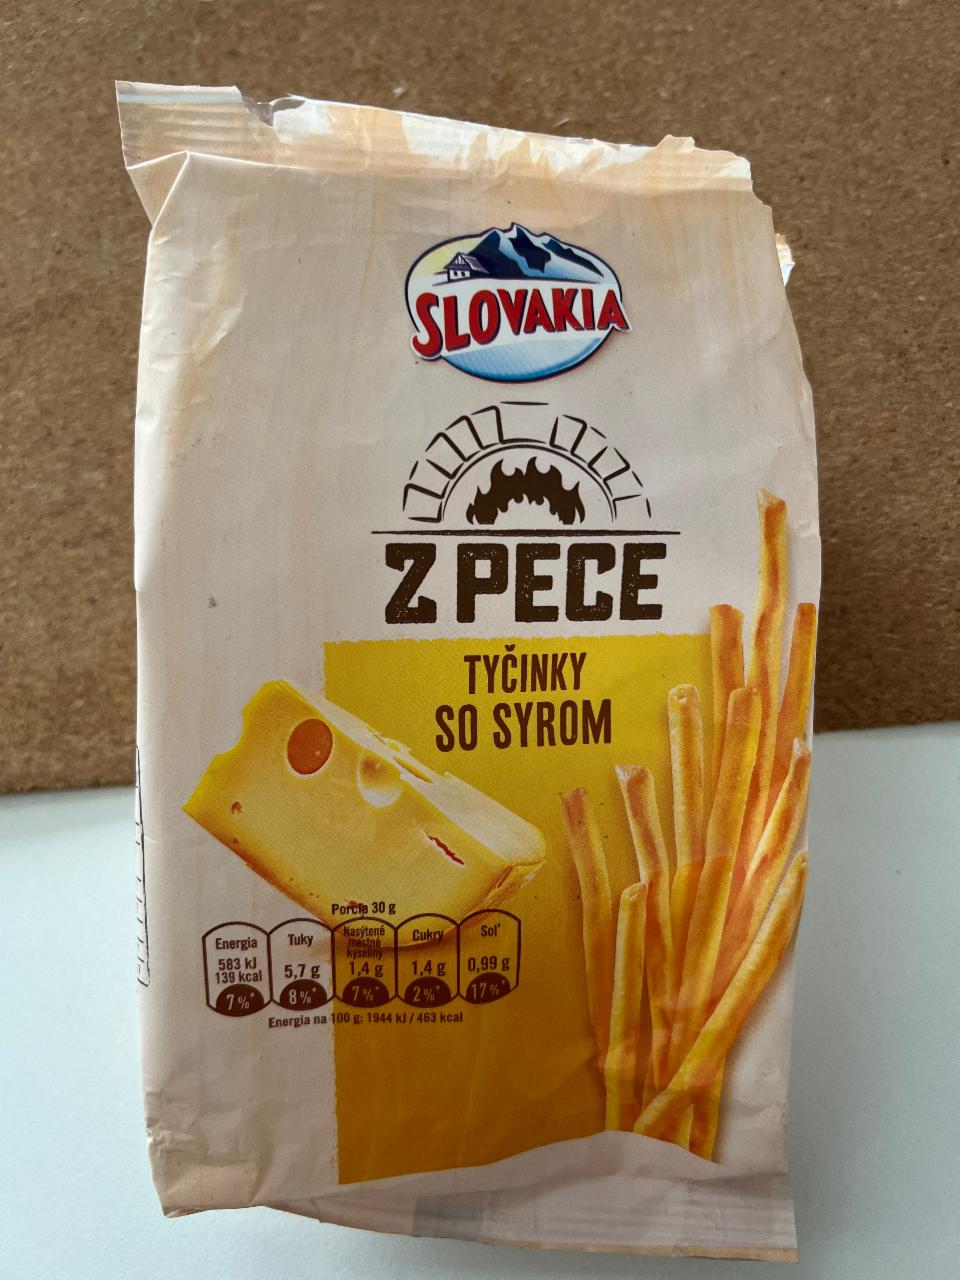 Képek - Tyčinky z pece so syrom Slovakia